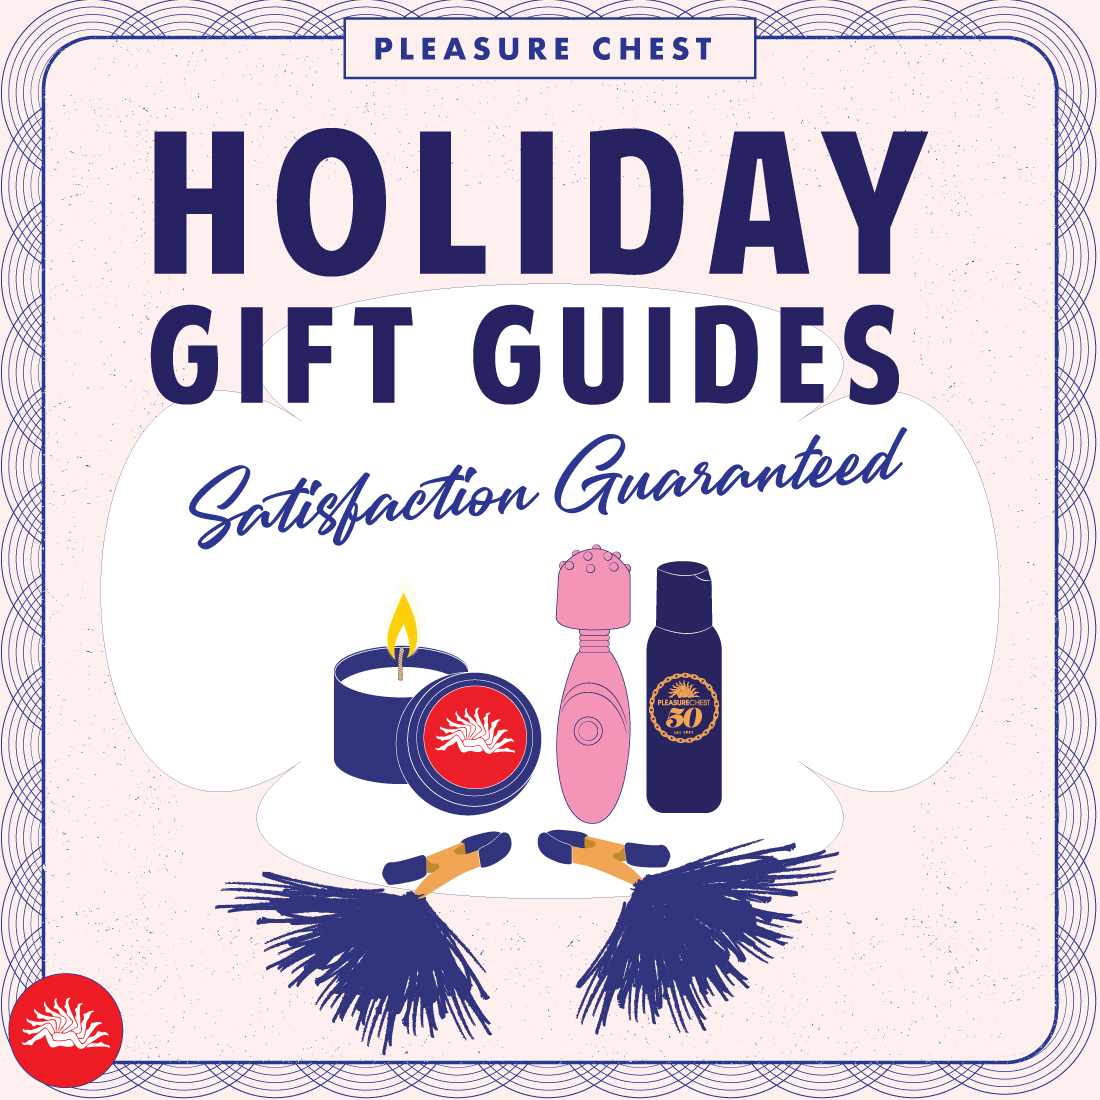 Holiday Gift Guides: Satisfaction Guaranteed